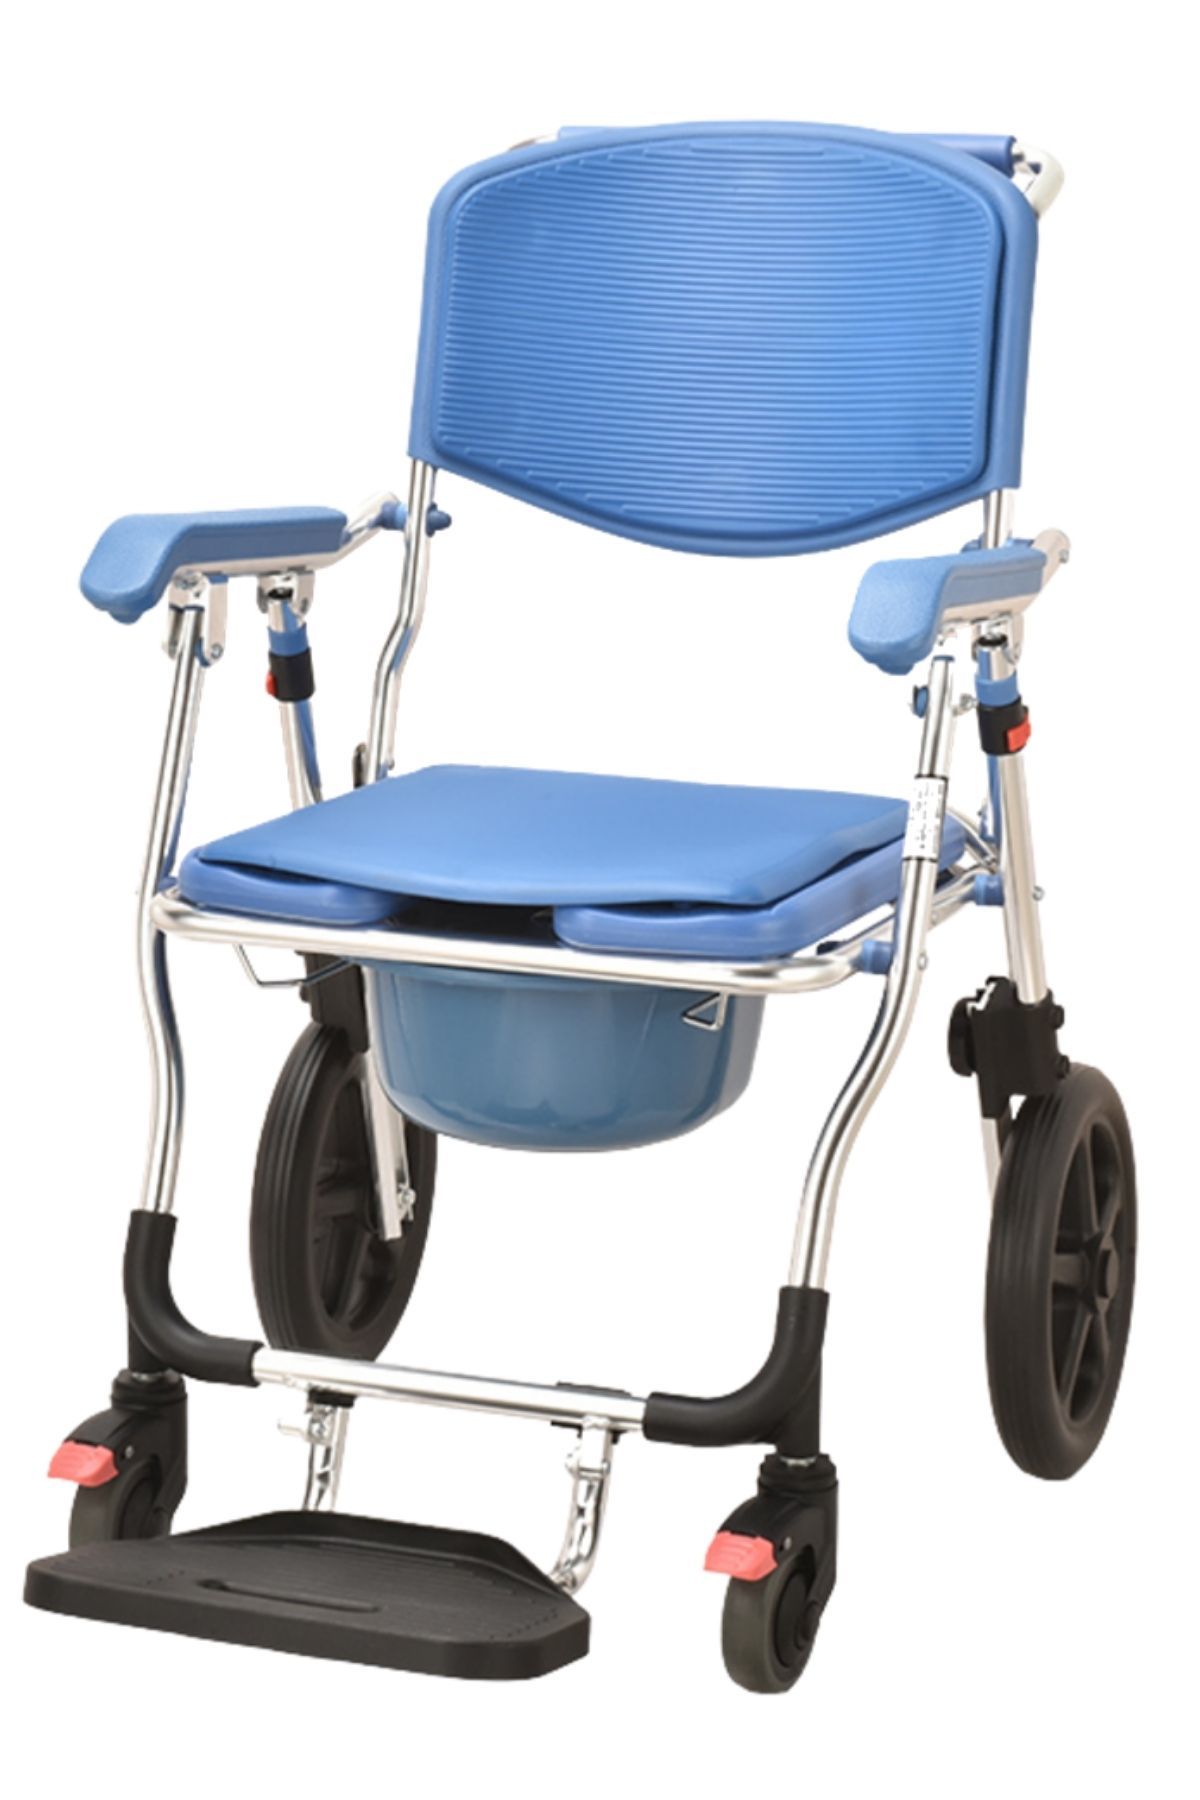 Banyo Sandalyesi | Tuvalet Sandalyesi | Klozetli Tekerlekli Sandalye | Dışarıda Kullanılır